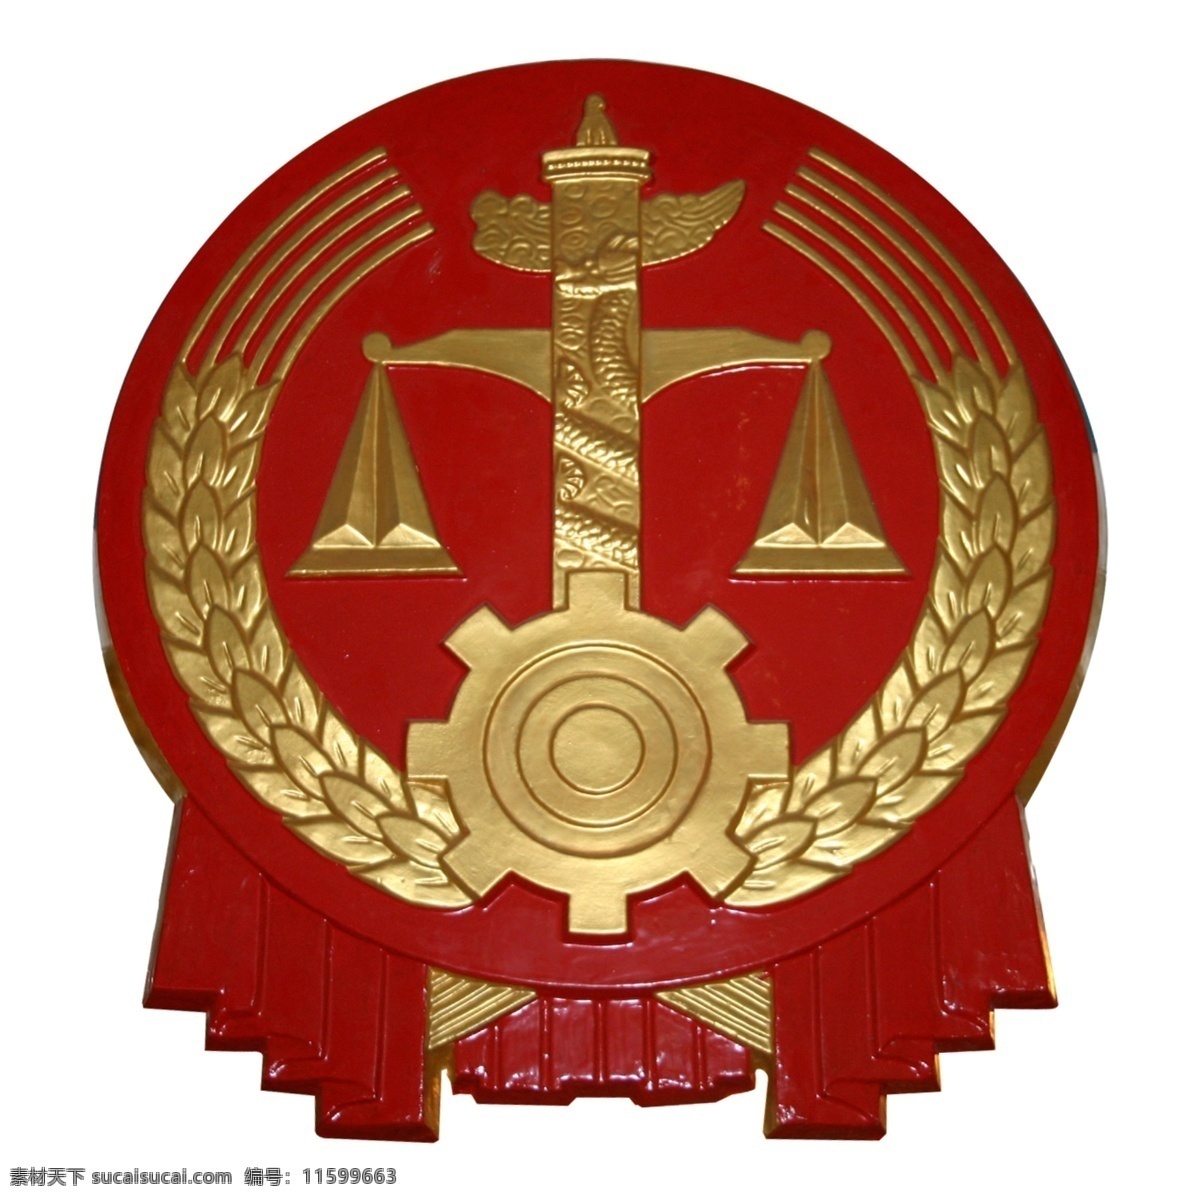 标志图标 公共标识标志 中国 中国政府 标志 类 政府标志 中国政府标志 中国政府类 政府标志类 标志类 psd源文件 logo设计